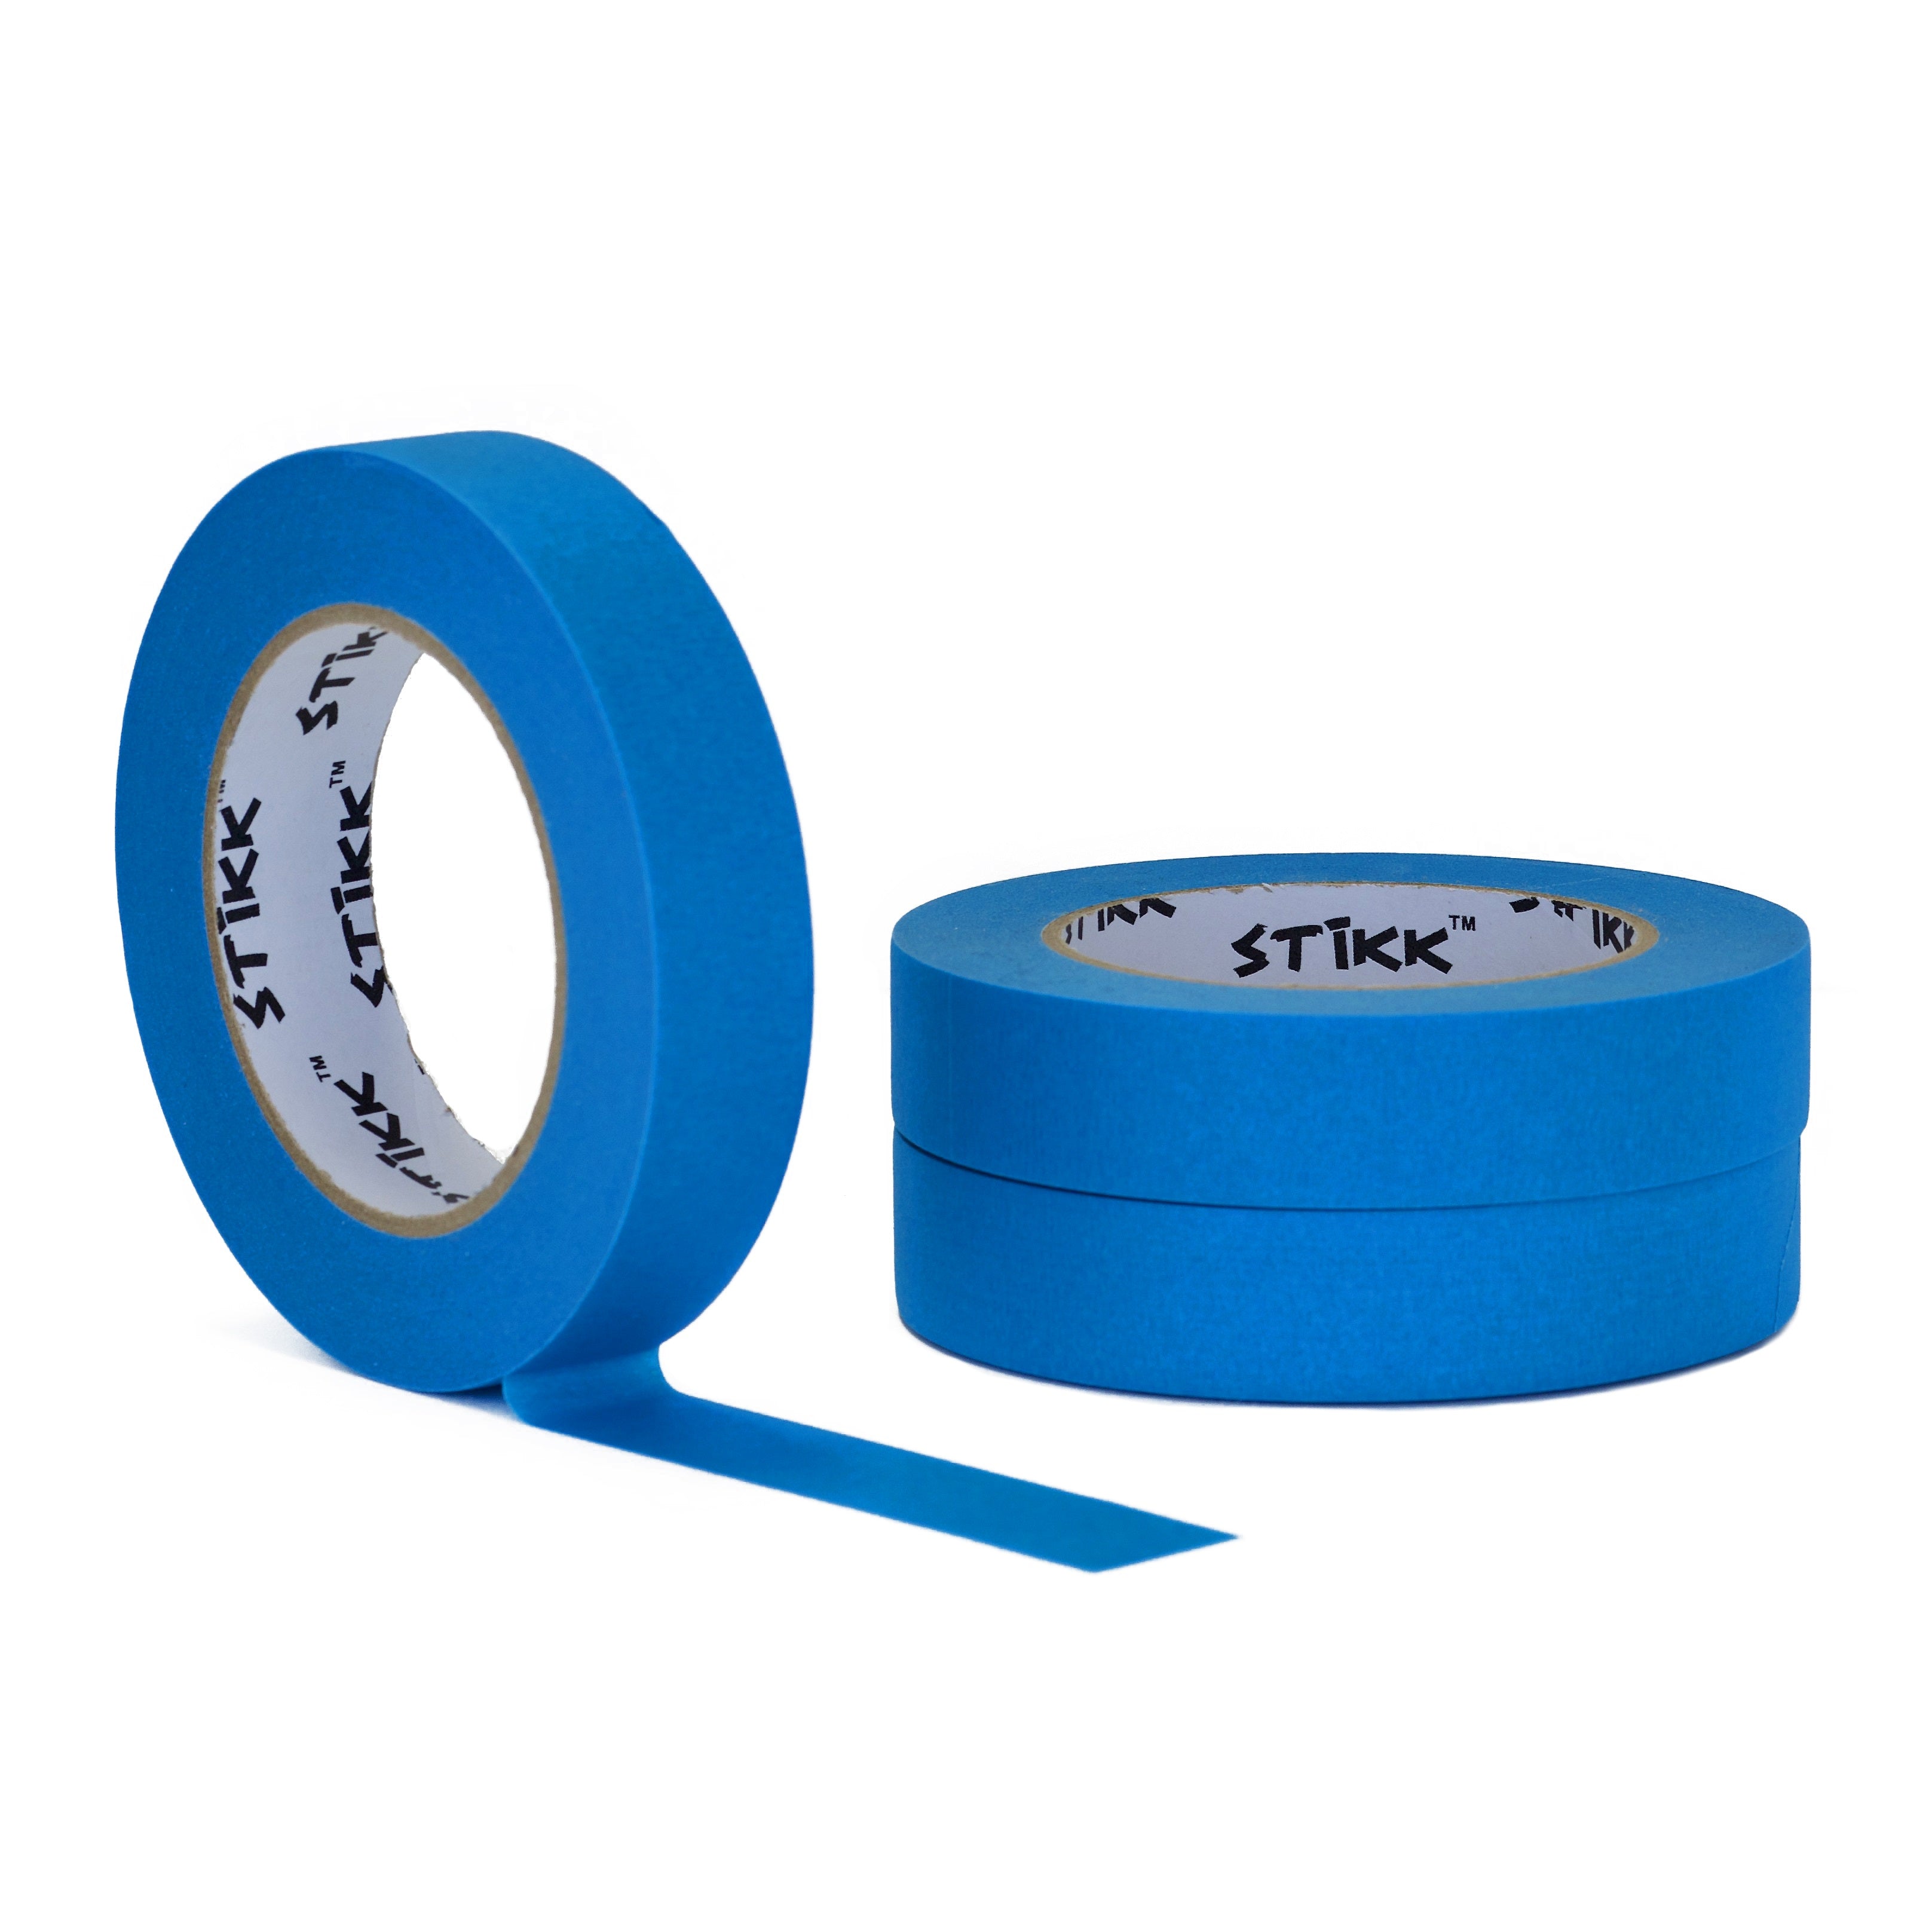 3 pack 1 inch x 60 yard rolls (24mm x 55m) STIKK Sky Blue Painters Ma –  STIKK Tape